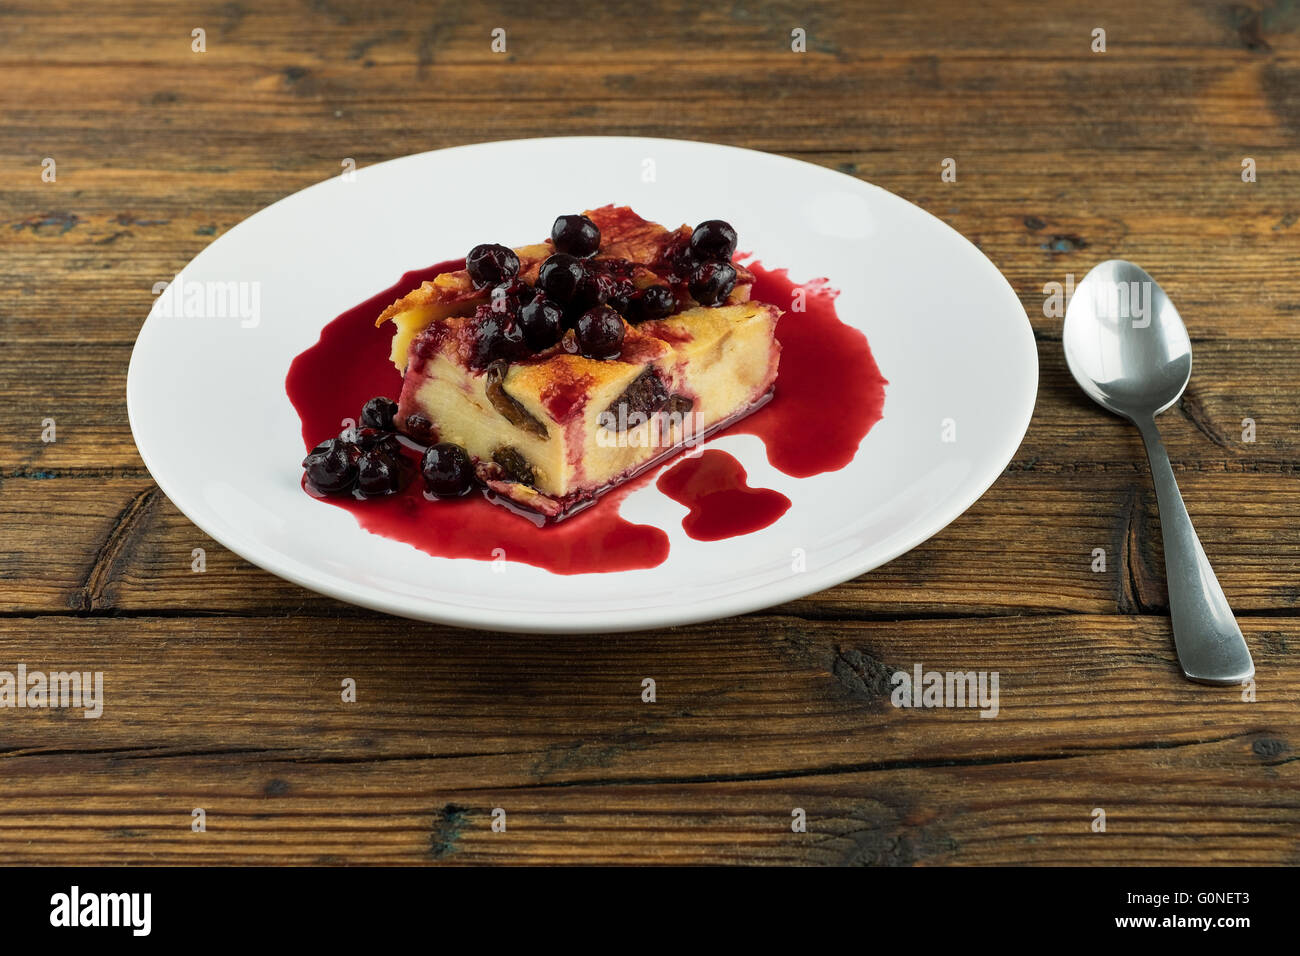 Pudding aux pruneaux, raisins secs sur le dessus d'une plaque blanche sur une table en bois Banque D'Images